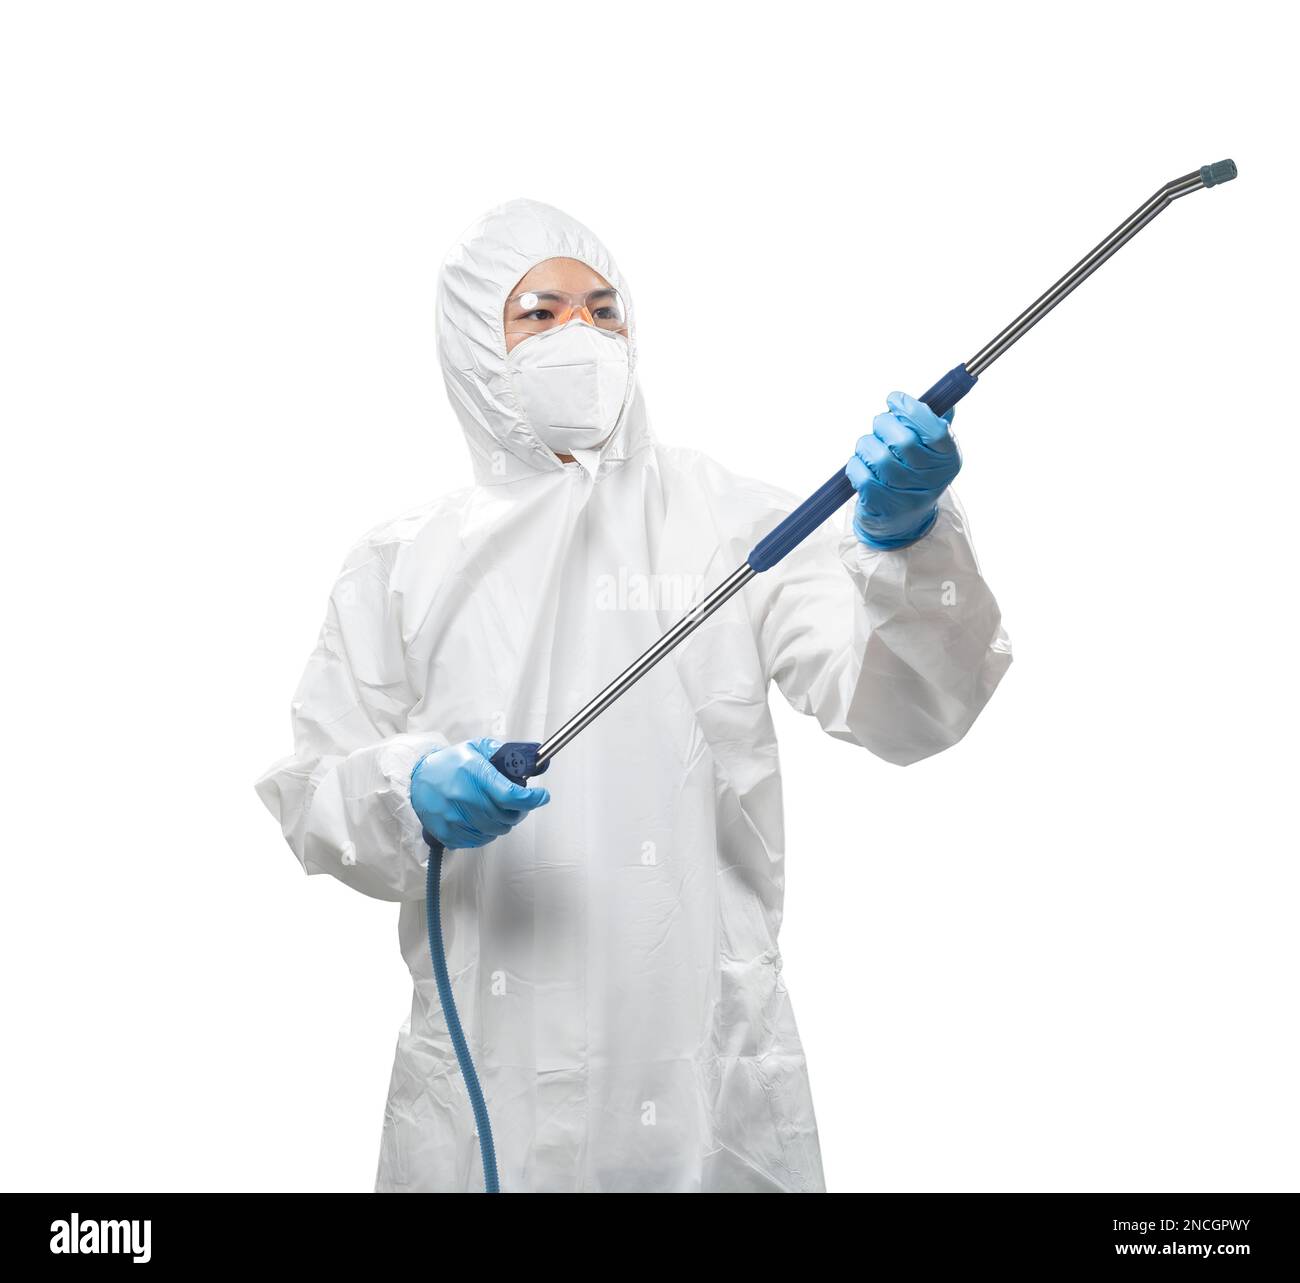 Arbeiter trägt medizinischen Schutzanzug oder weißen Overall Anzug mit Maske, Schutzbrille und Ausrüstung für Spray isoliert auf weißem Hintergrund Stockfoto